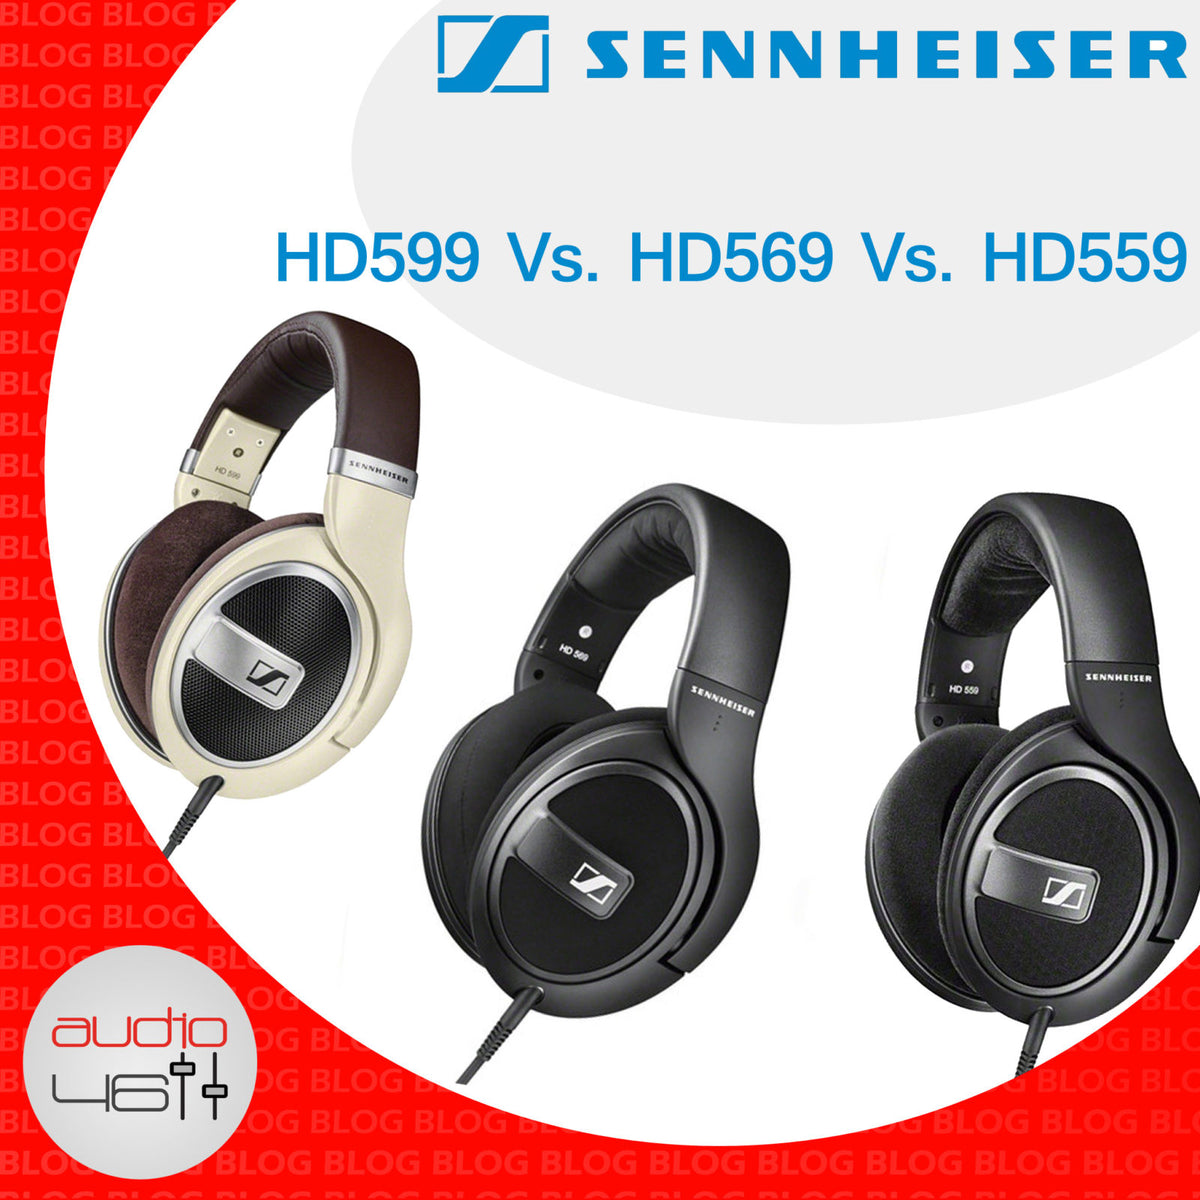 Revisión comparativa de Sennheiser HD 579 vs HD 599